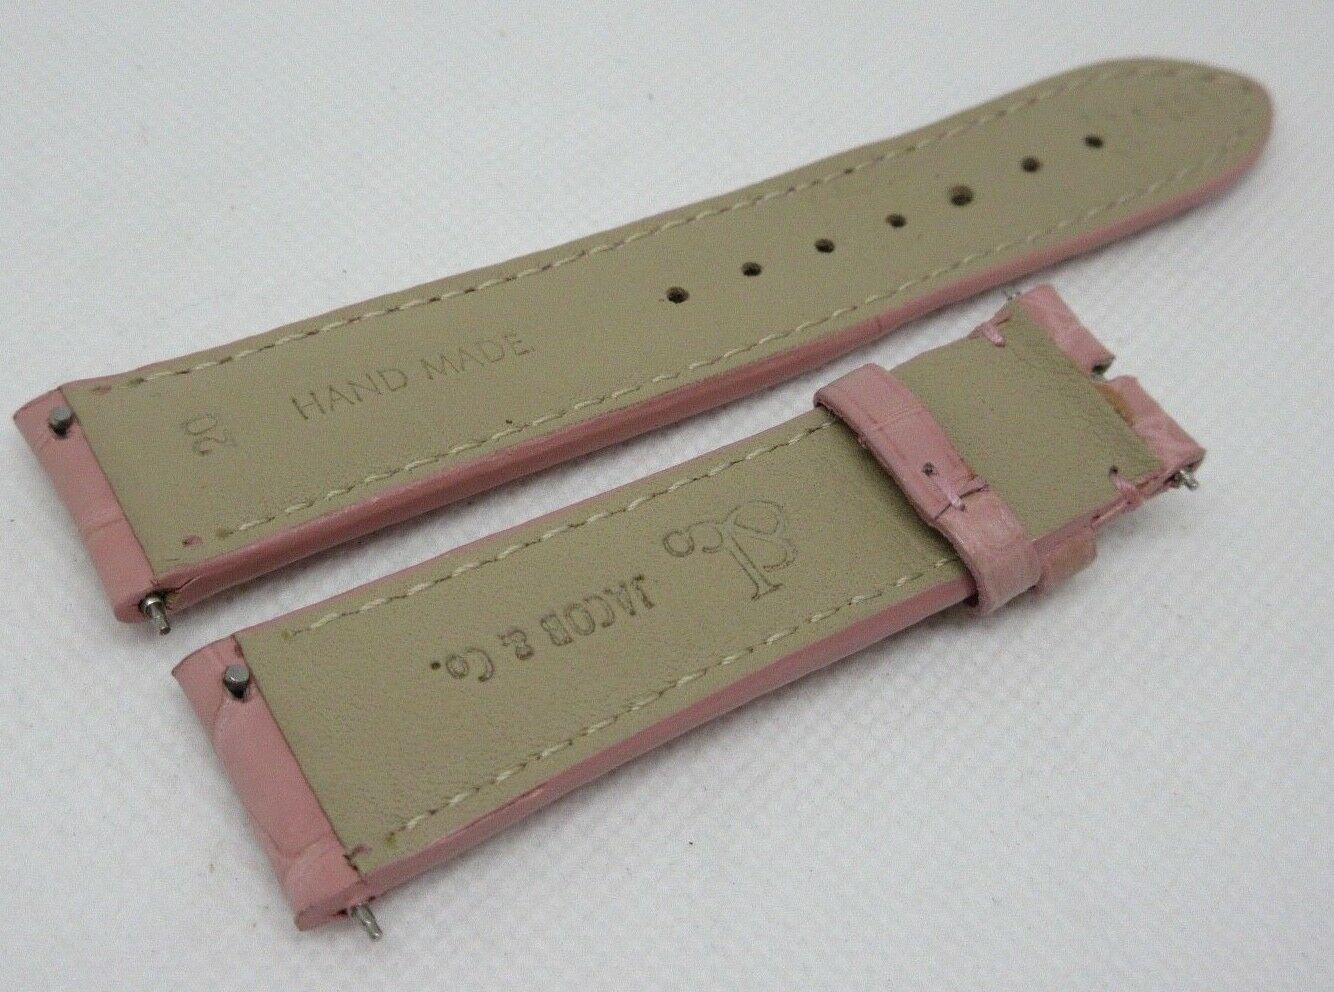 New Jacob & Co. 20mm Pink Alligator Strap OEM